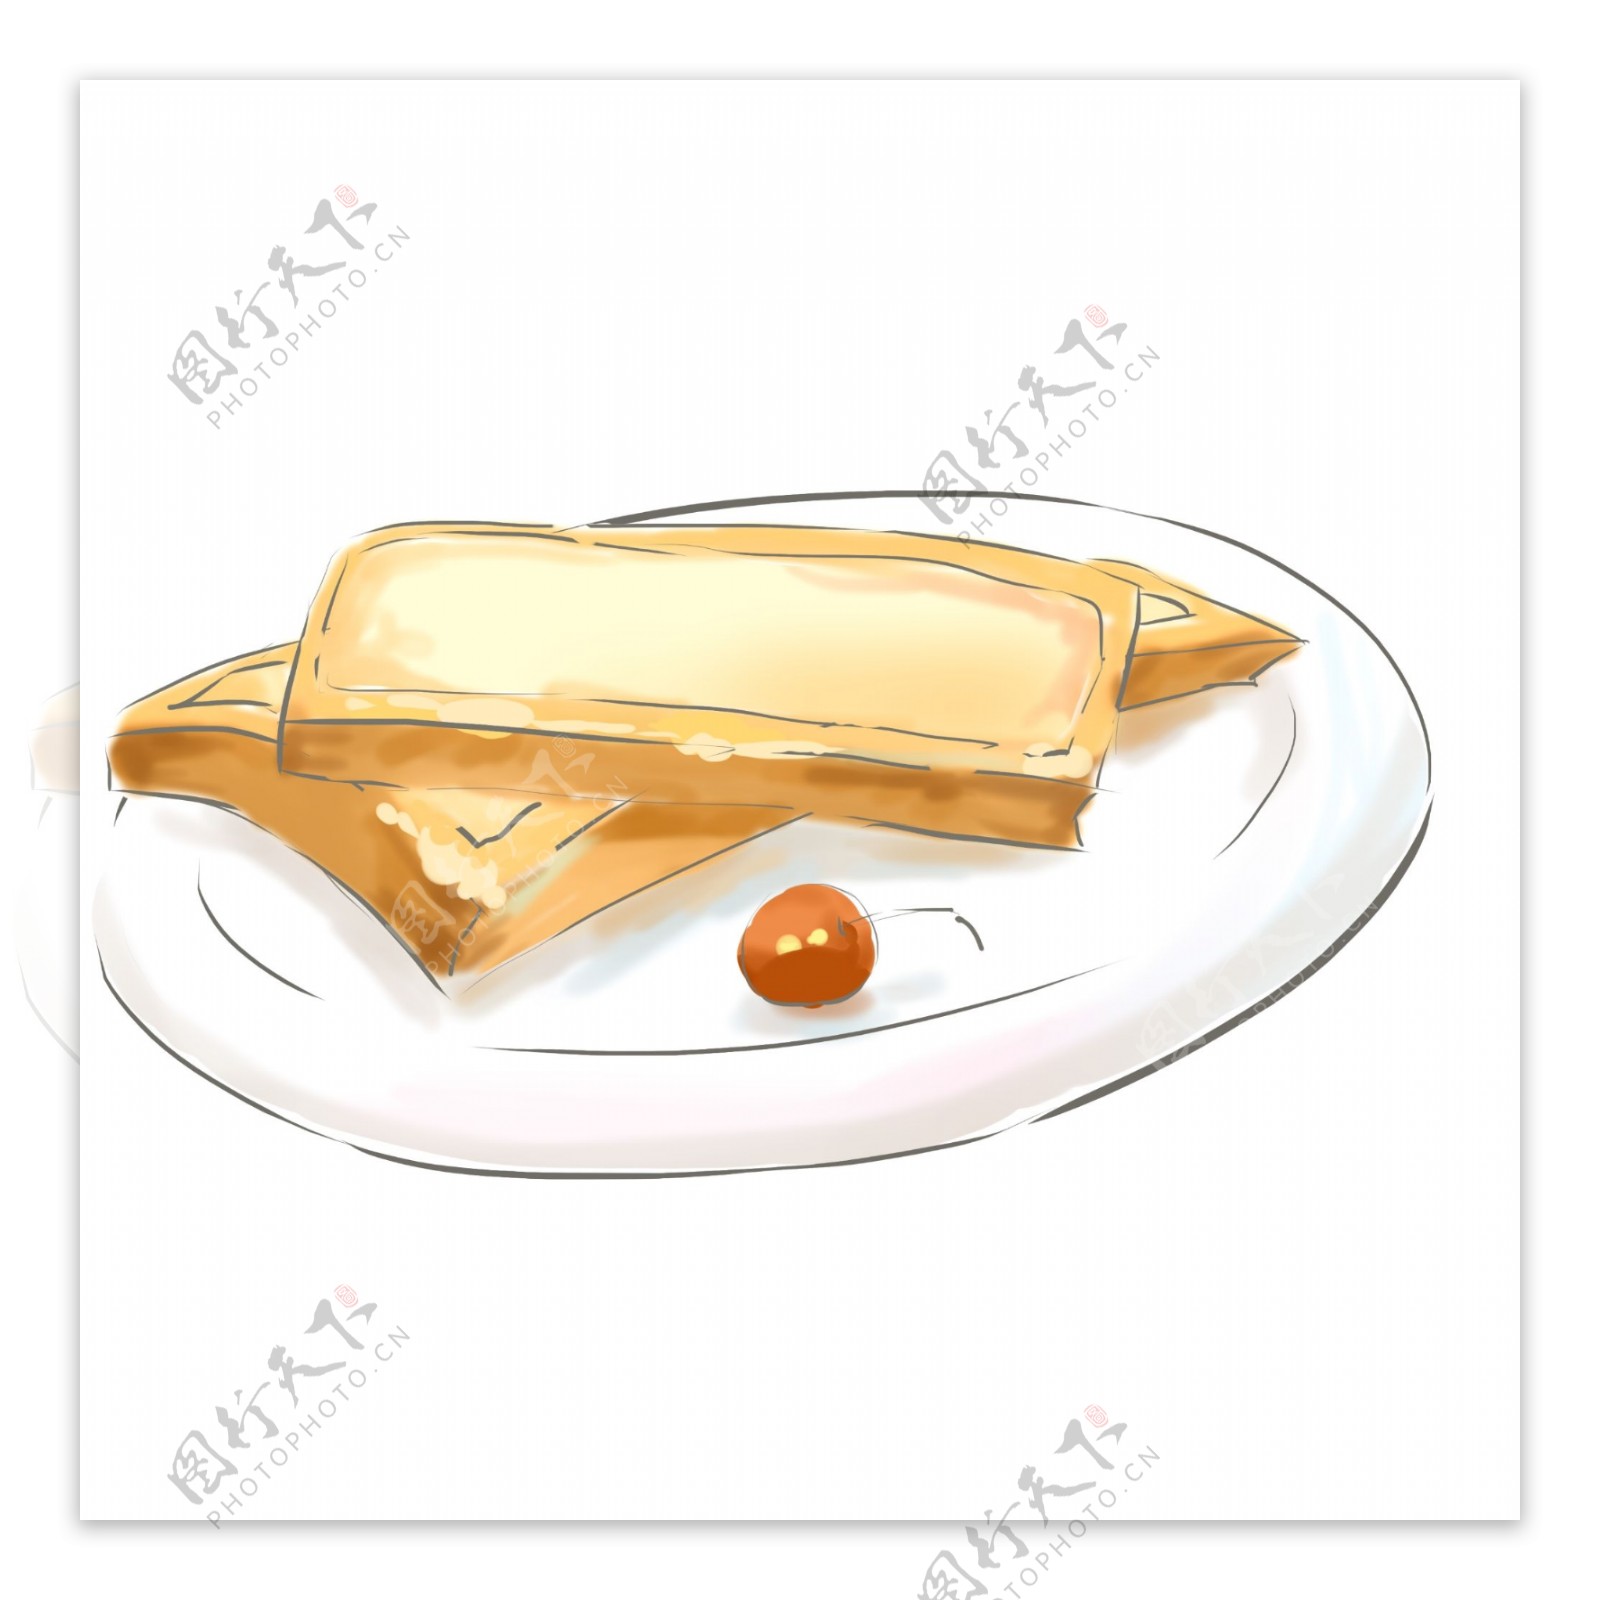 一盘面包早餐插画